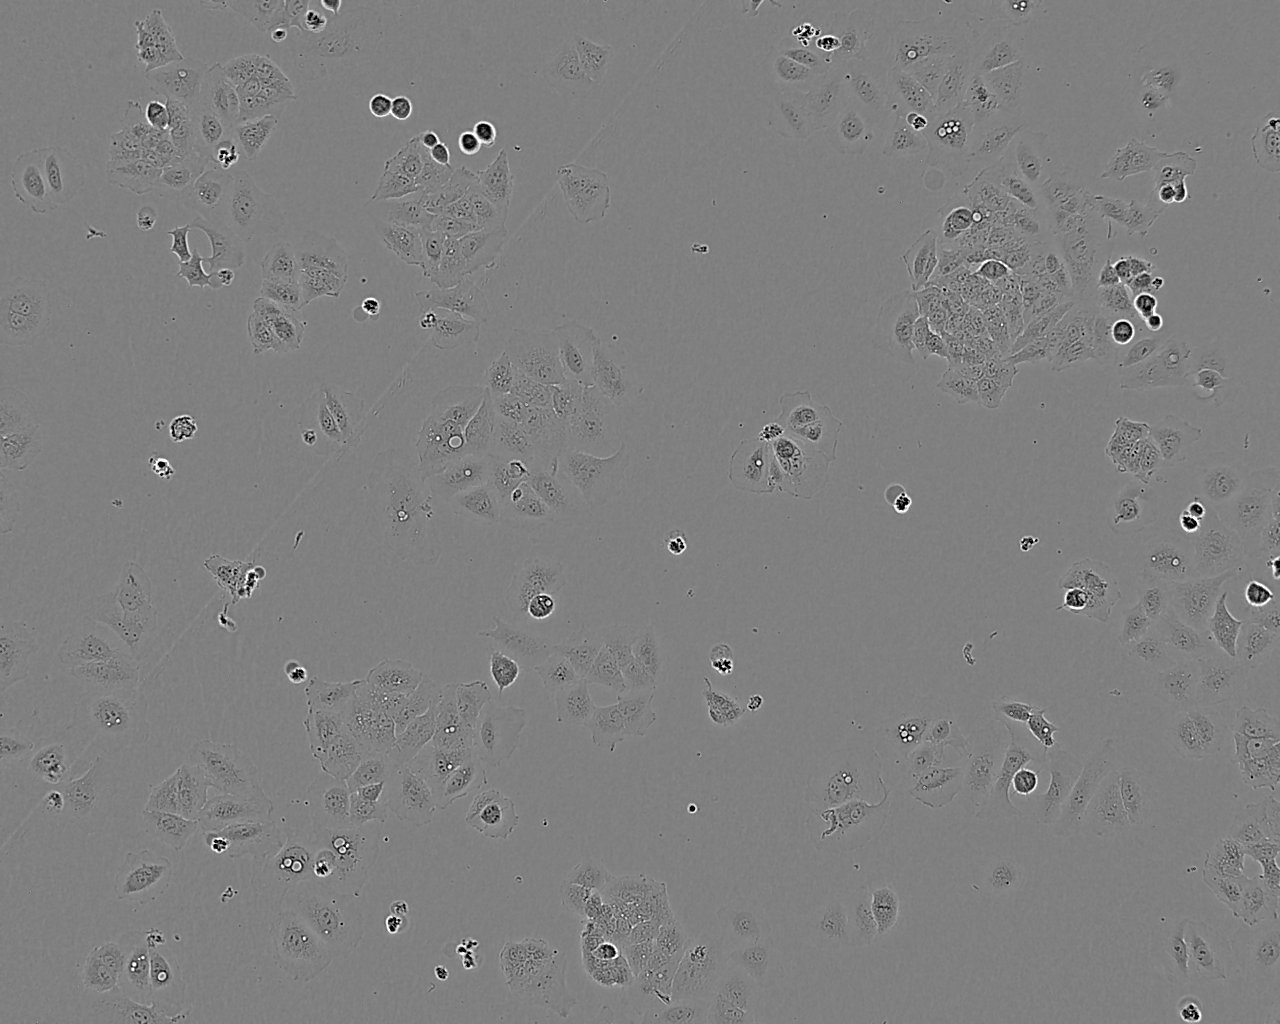 WB-F344 Cell:大鼠肝上皮样干细胞系,WB-F344 Cell